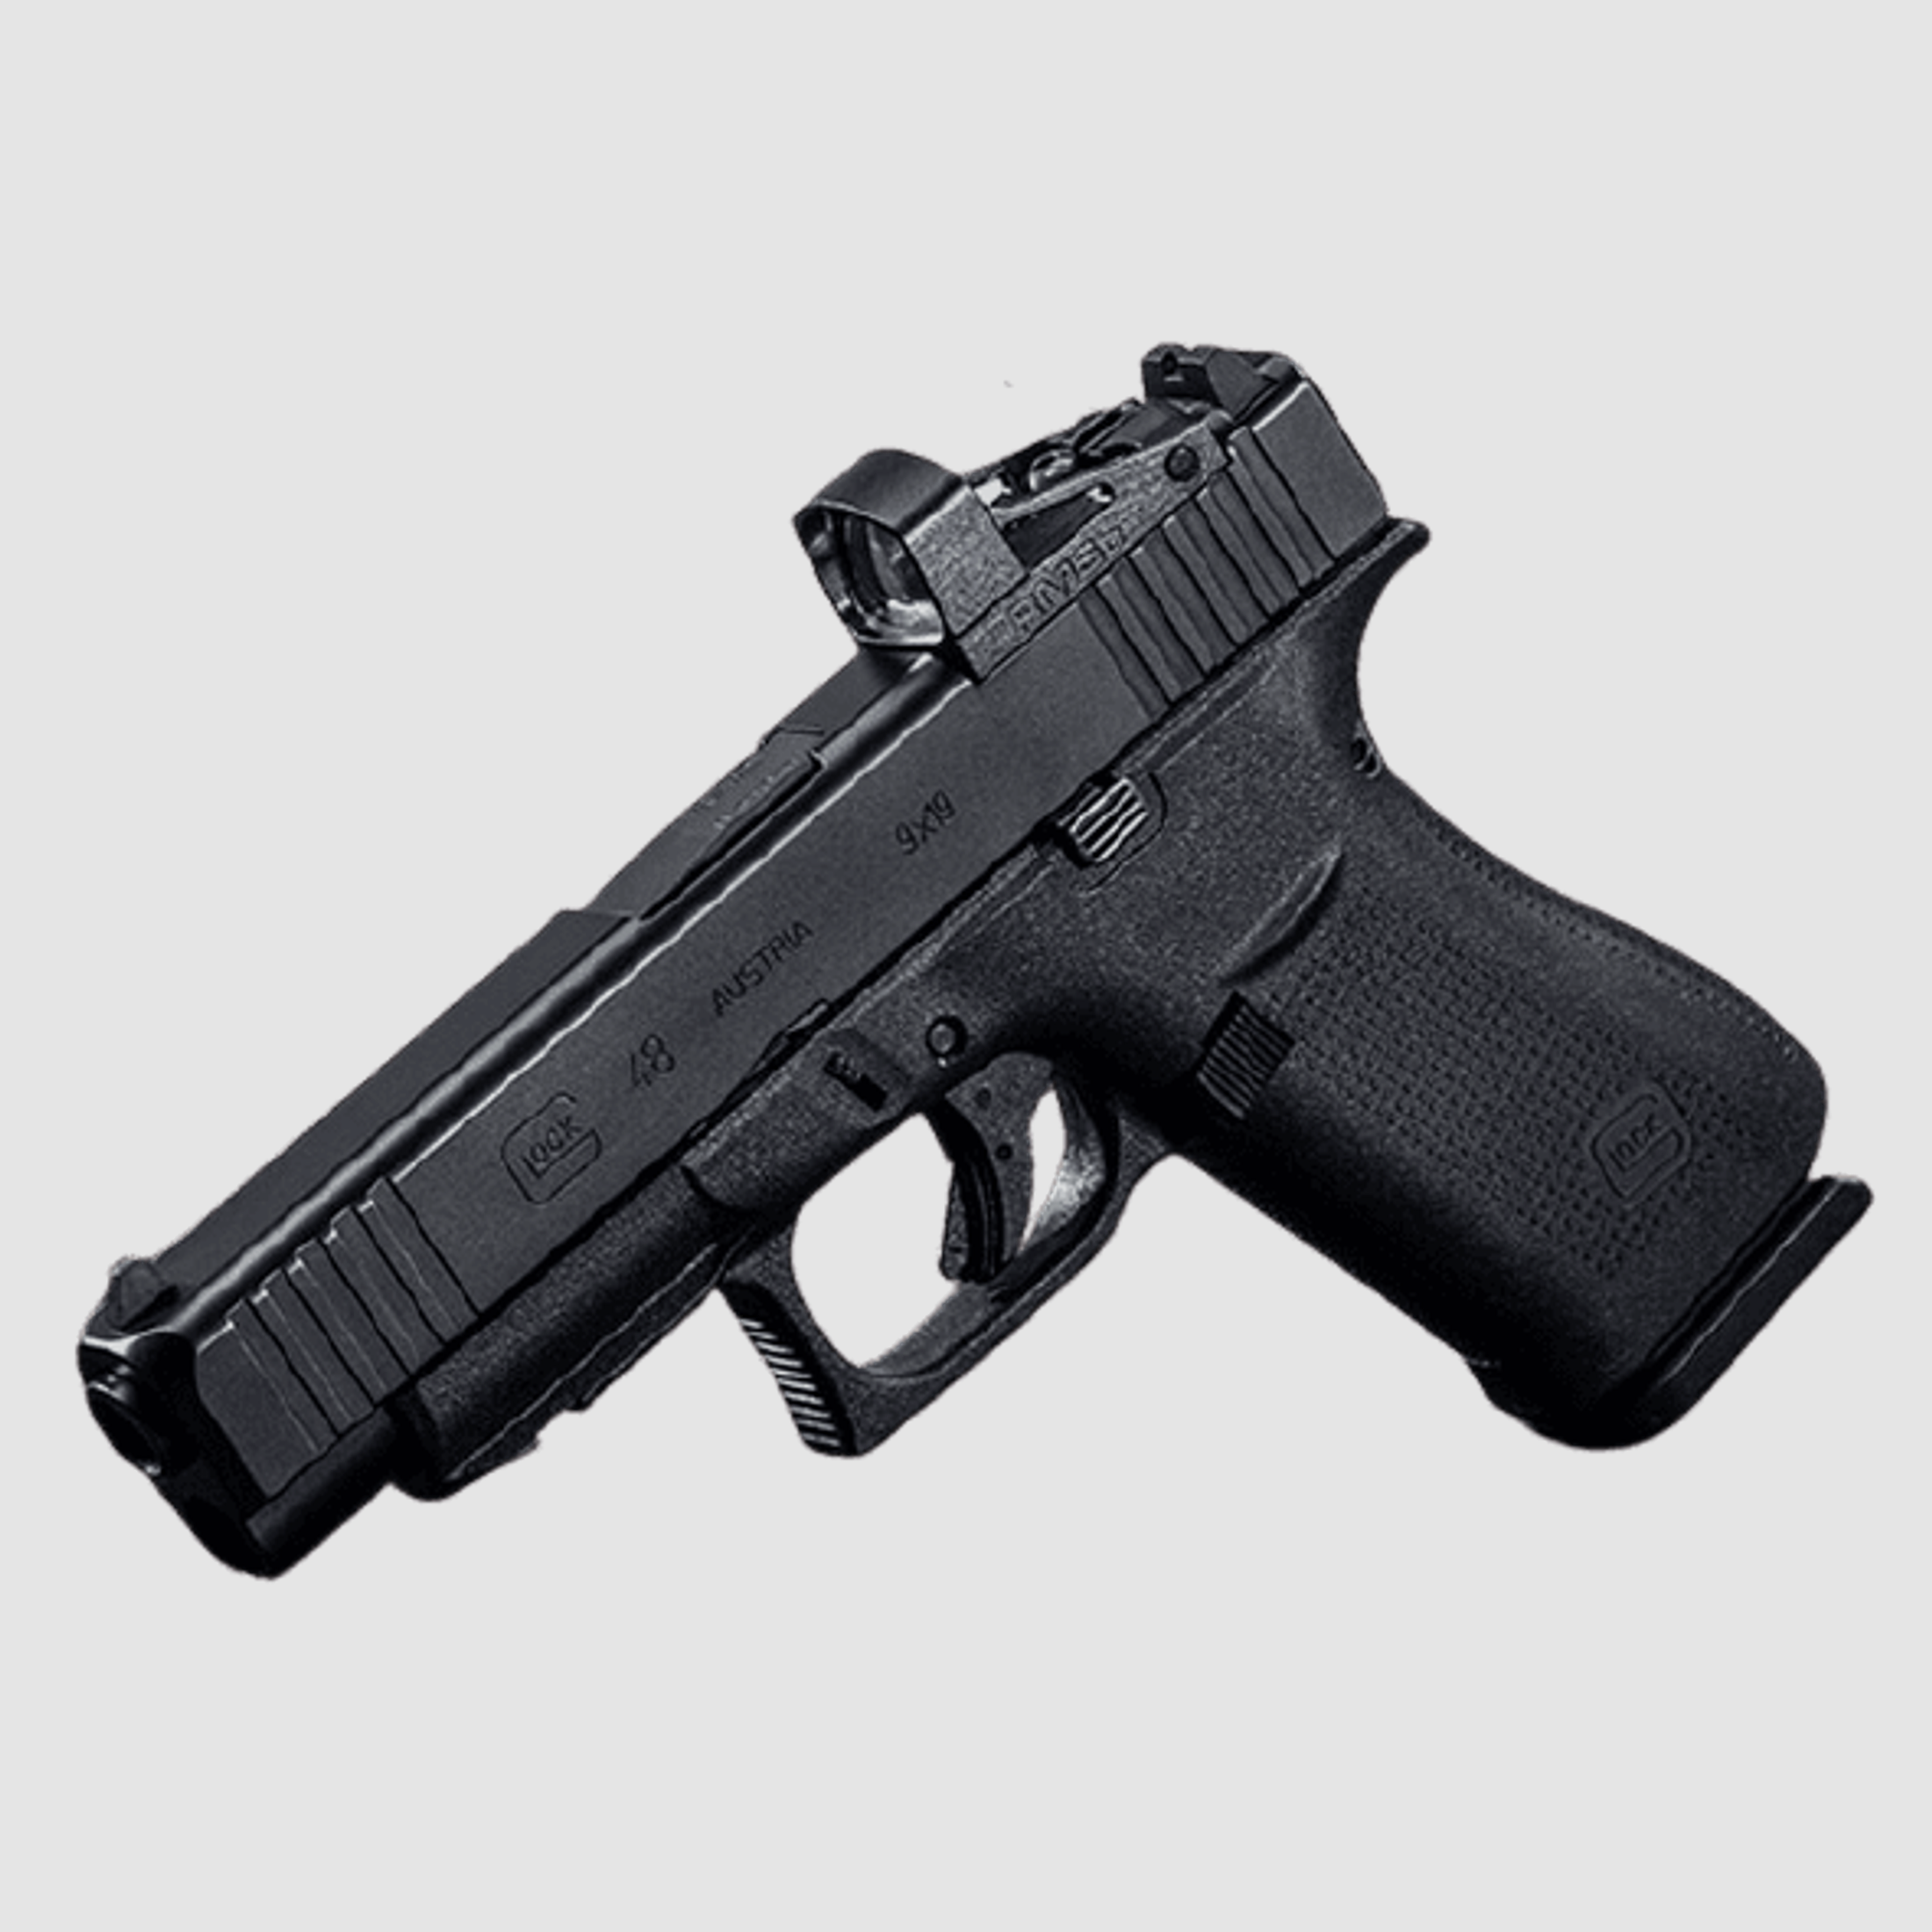 Glock 48 R MOS FS mit Reddot 9 mm Luger Pistole